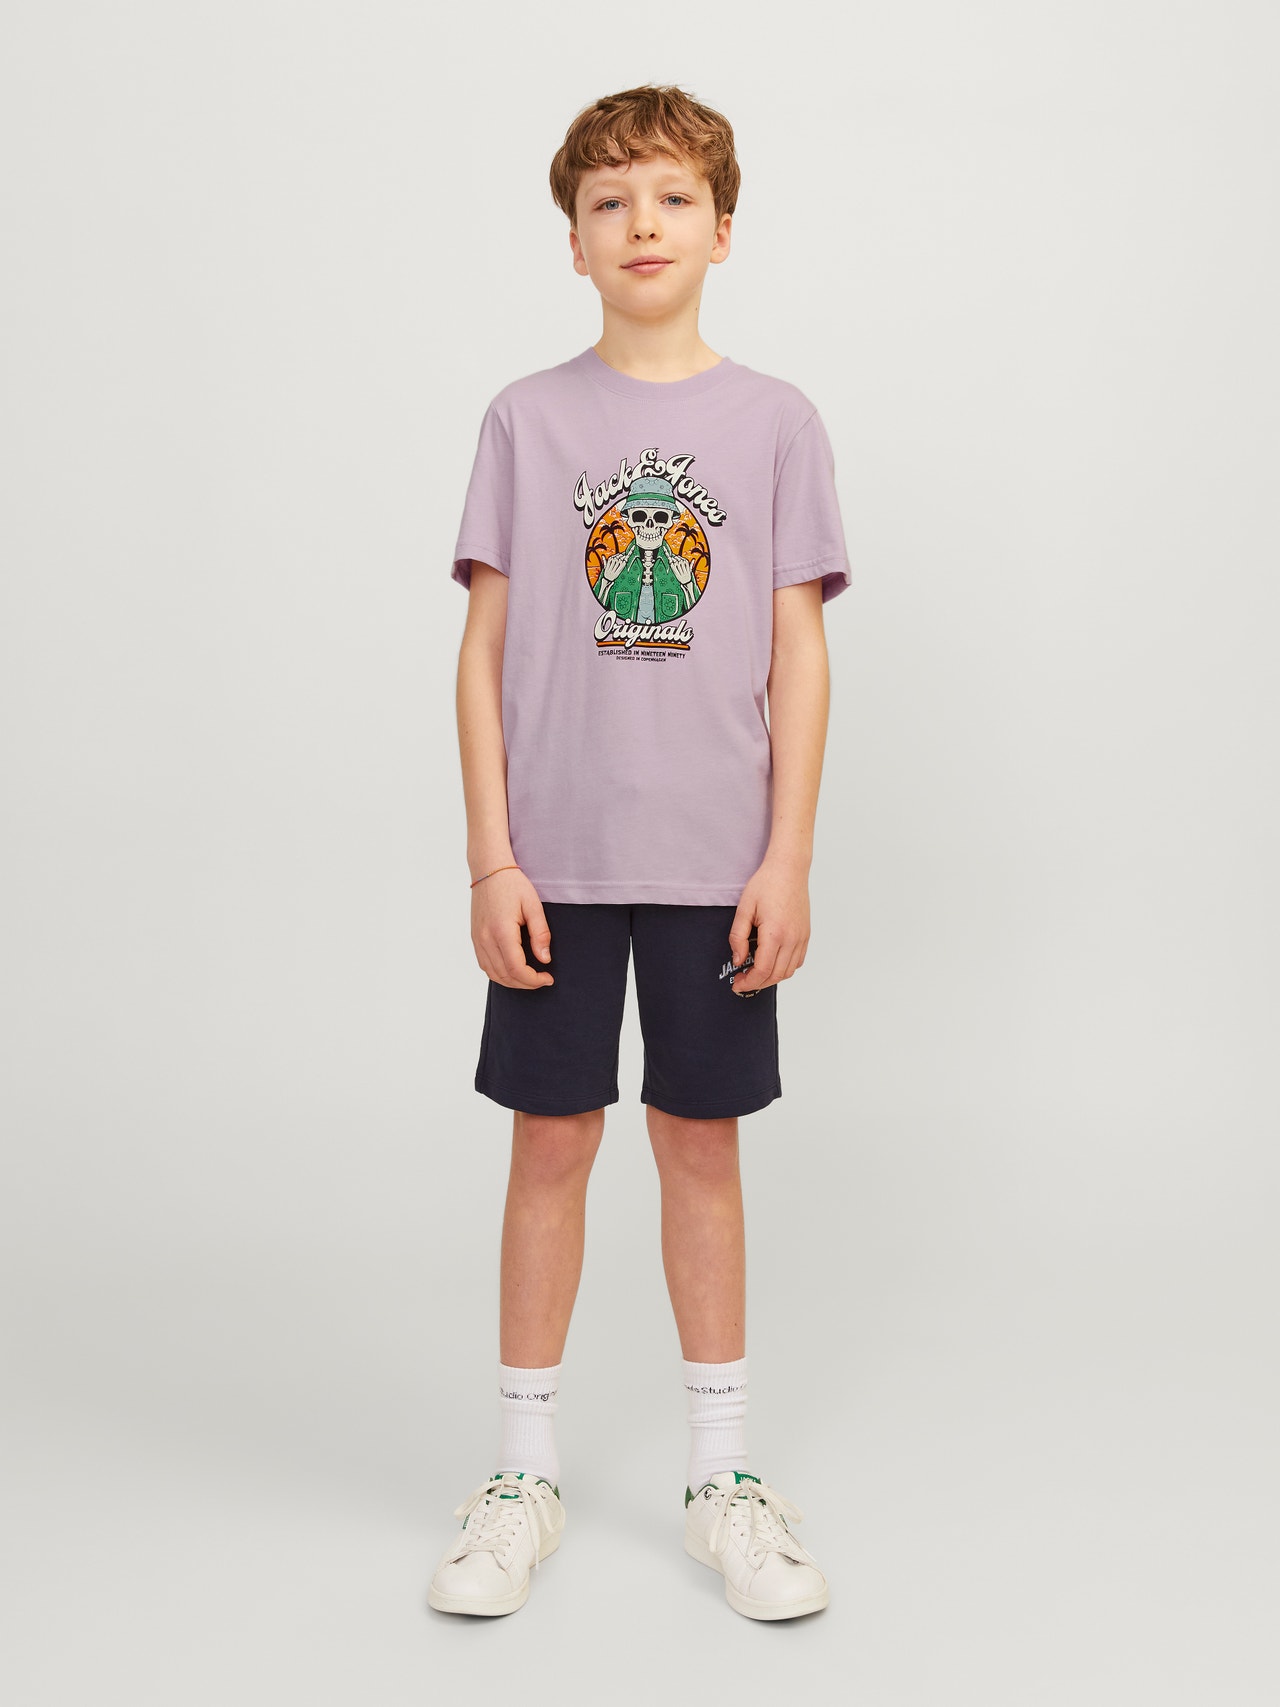 Jack & Jones Camiseta Estampado Para chicos -Lavender Frost - 12257131